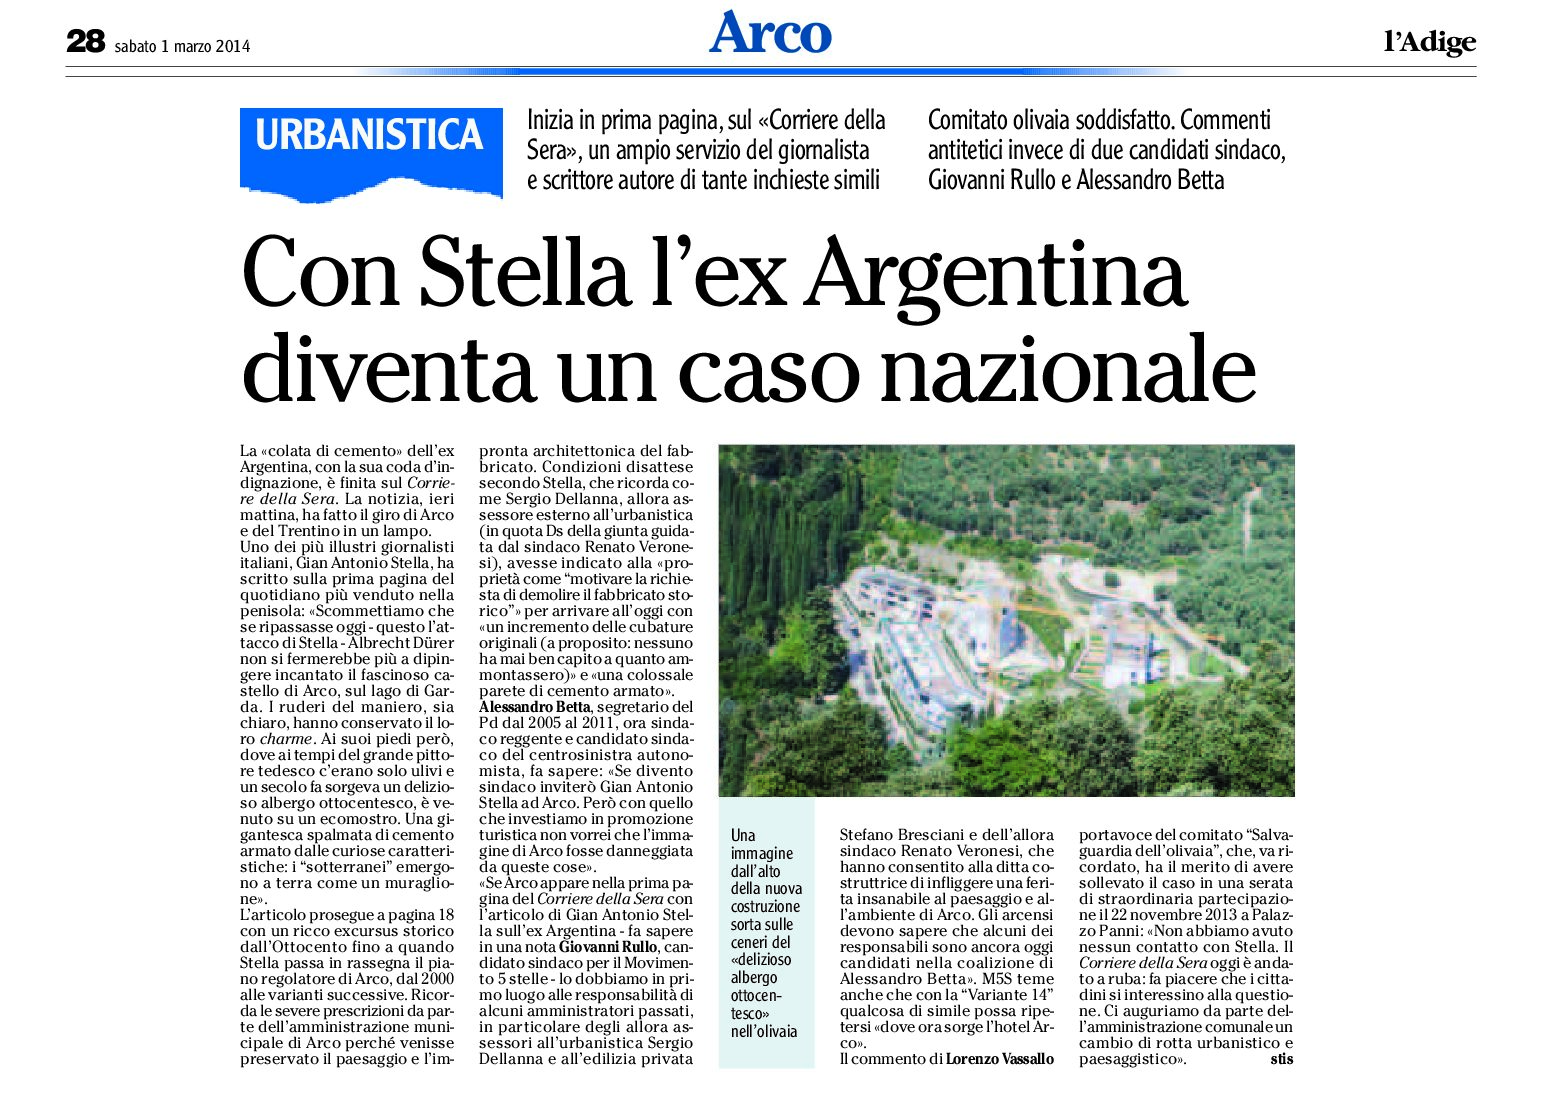 Arco: con Stella l’ex Argentina diventa un caso nazionale